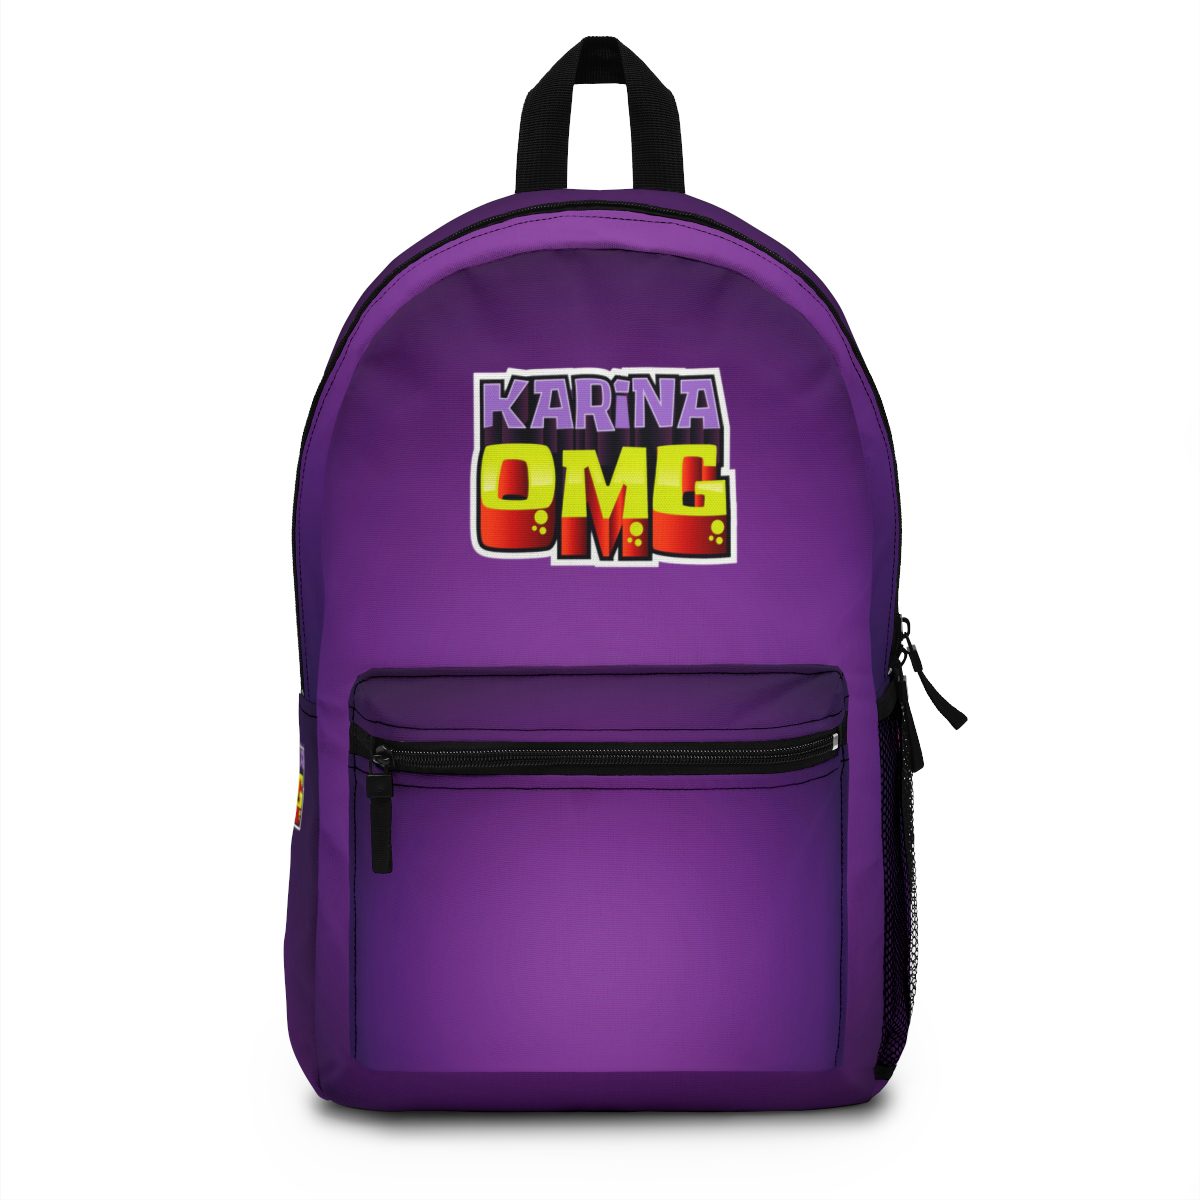 Karina OMG YouTuber Purple Backpack Cool Kiddo 10